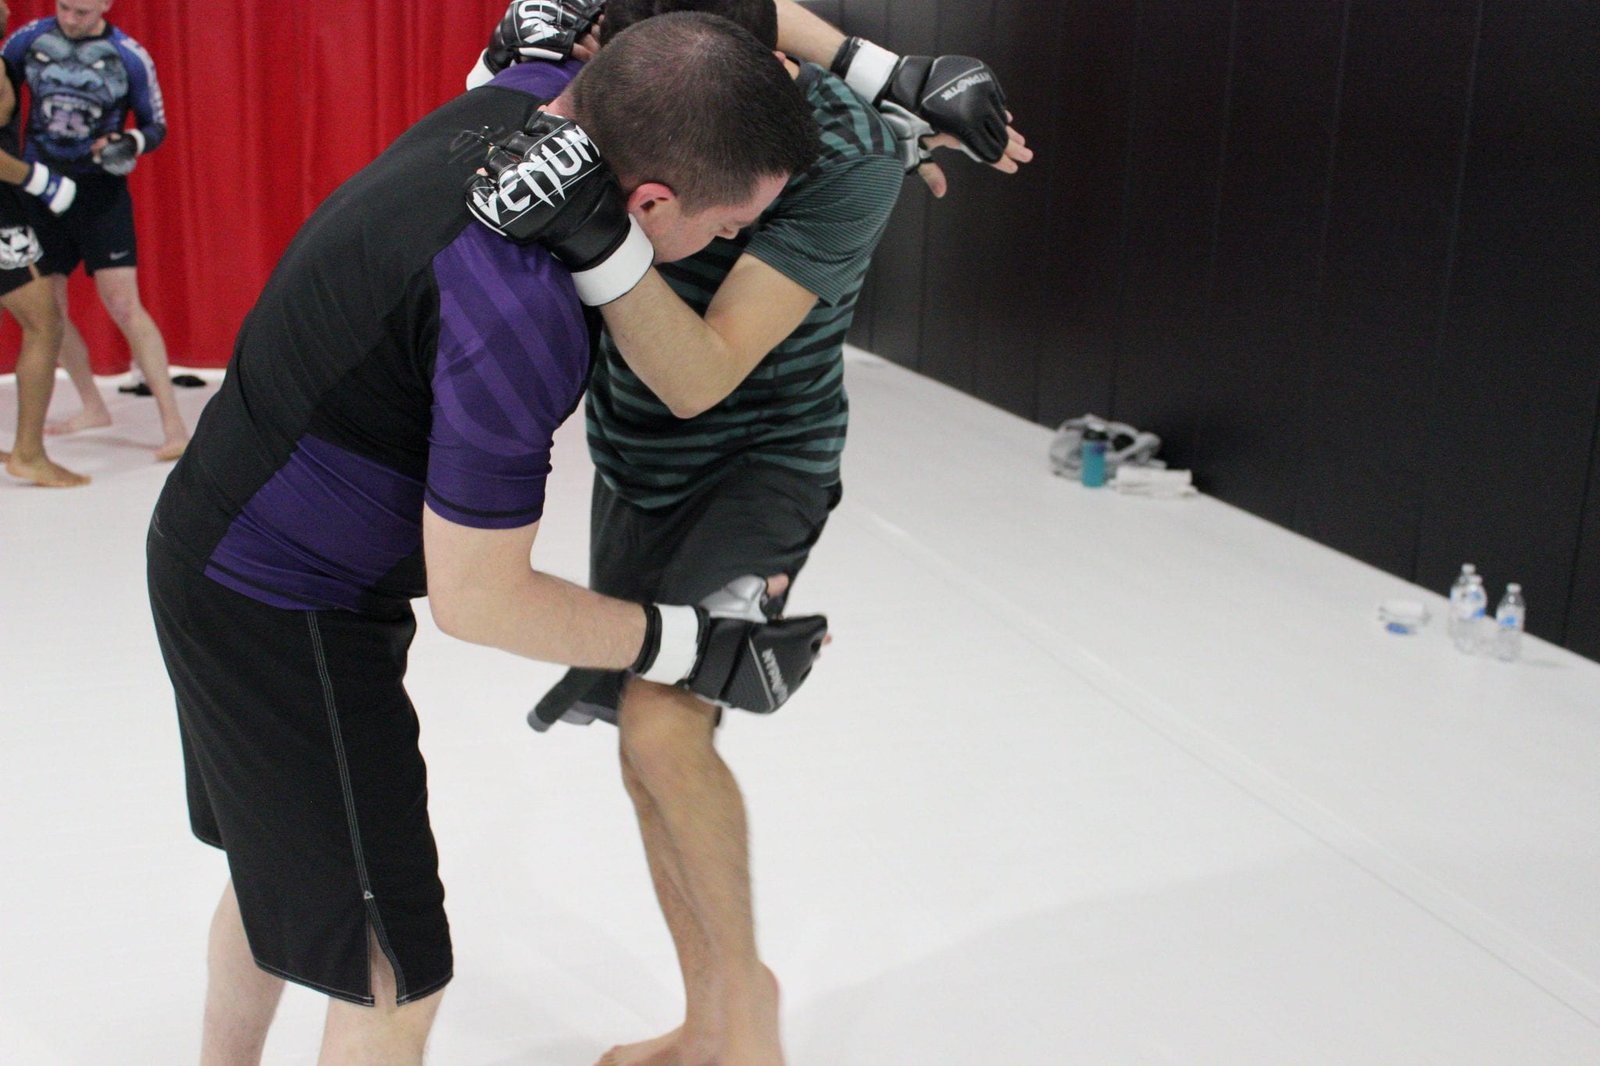 man in purple shirt and man in green striped shirt practising jiu-jitsu